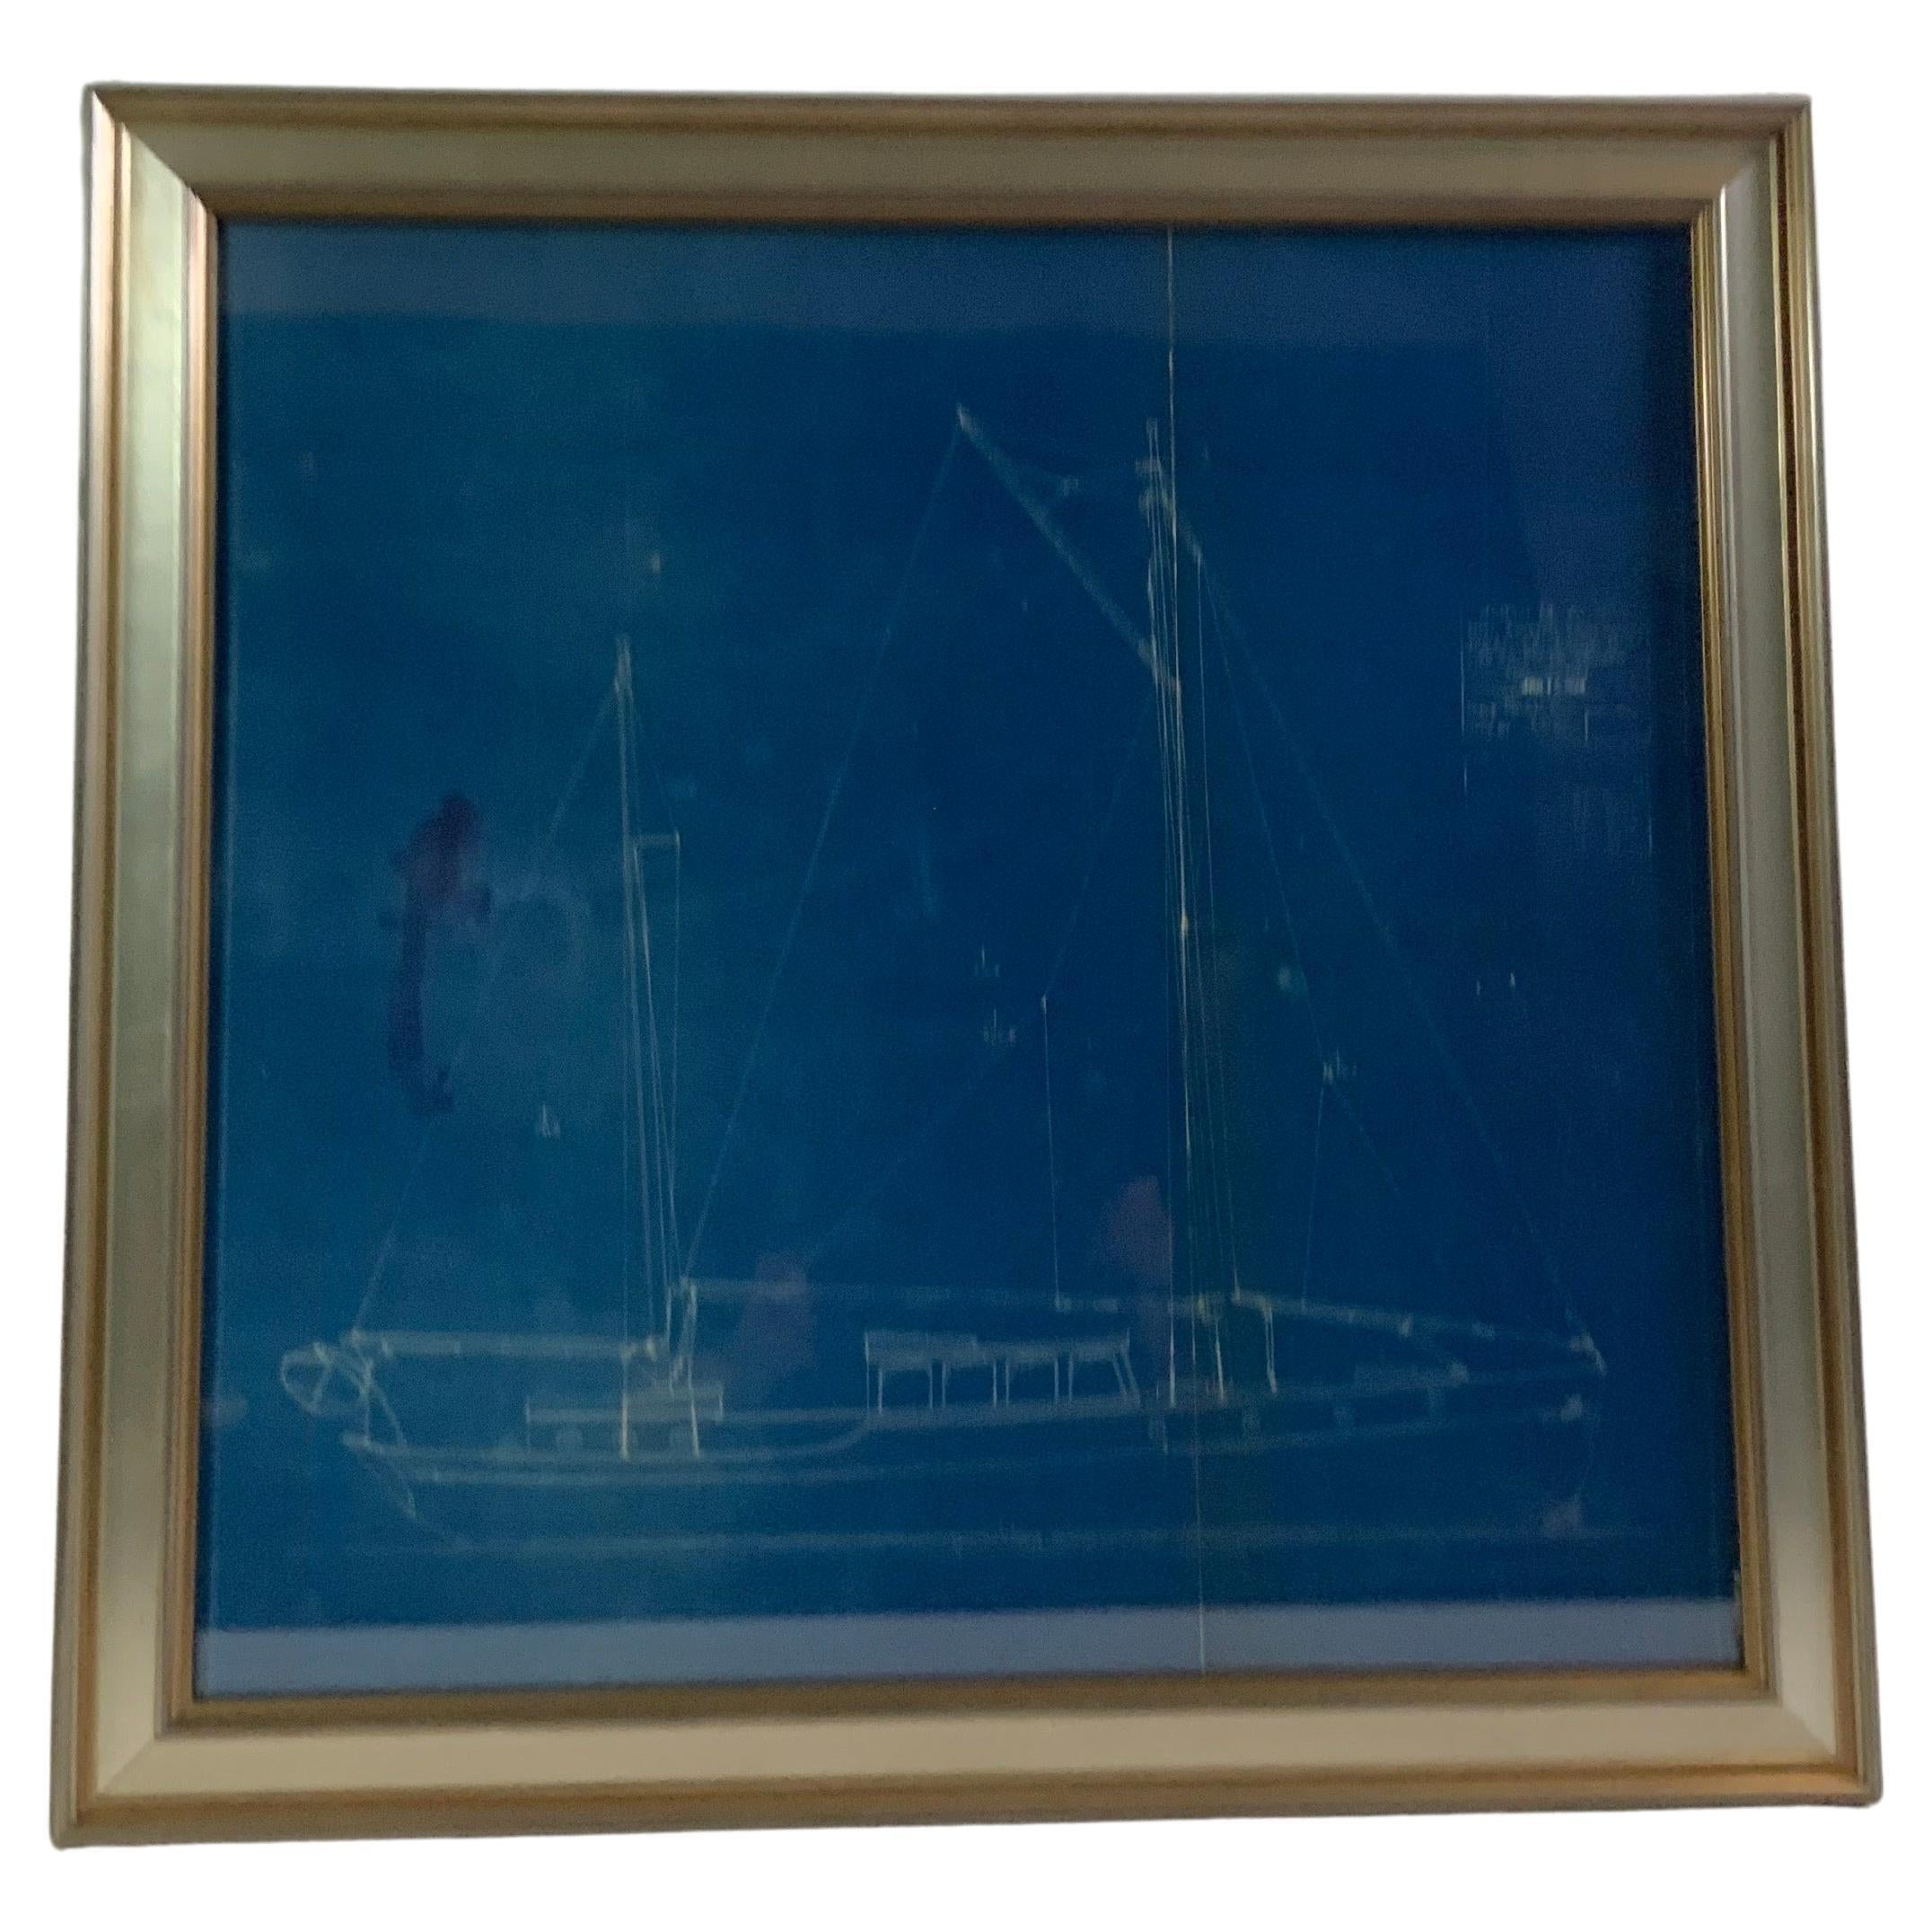 1929 Blueprint of a Yacht by John Alden